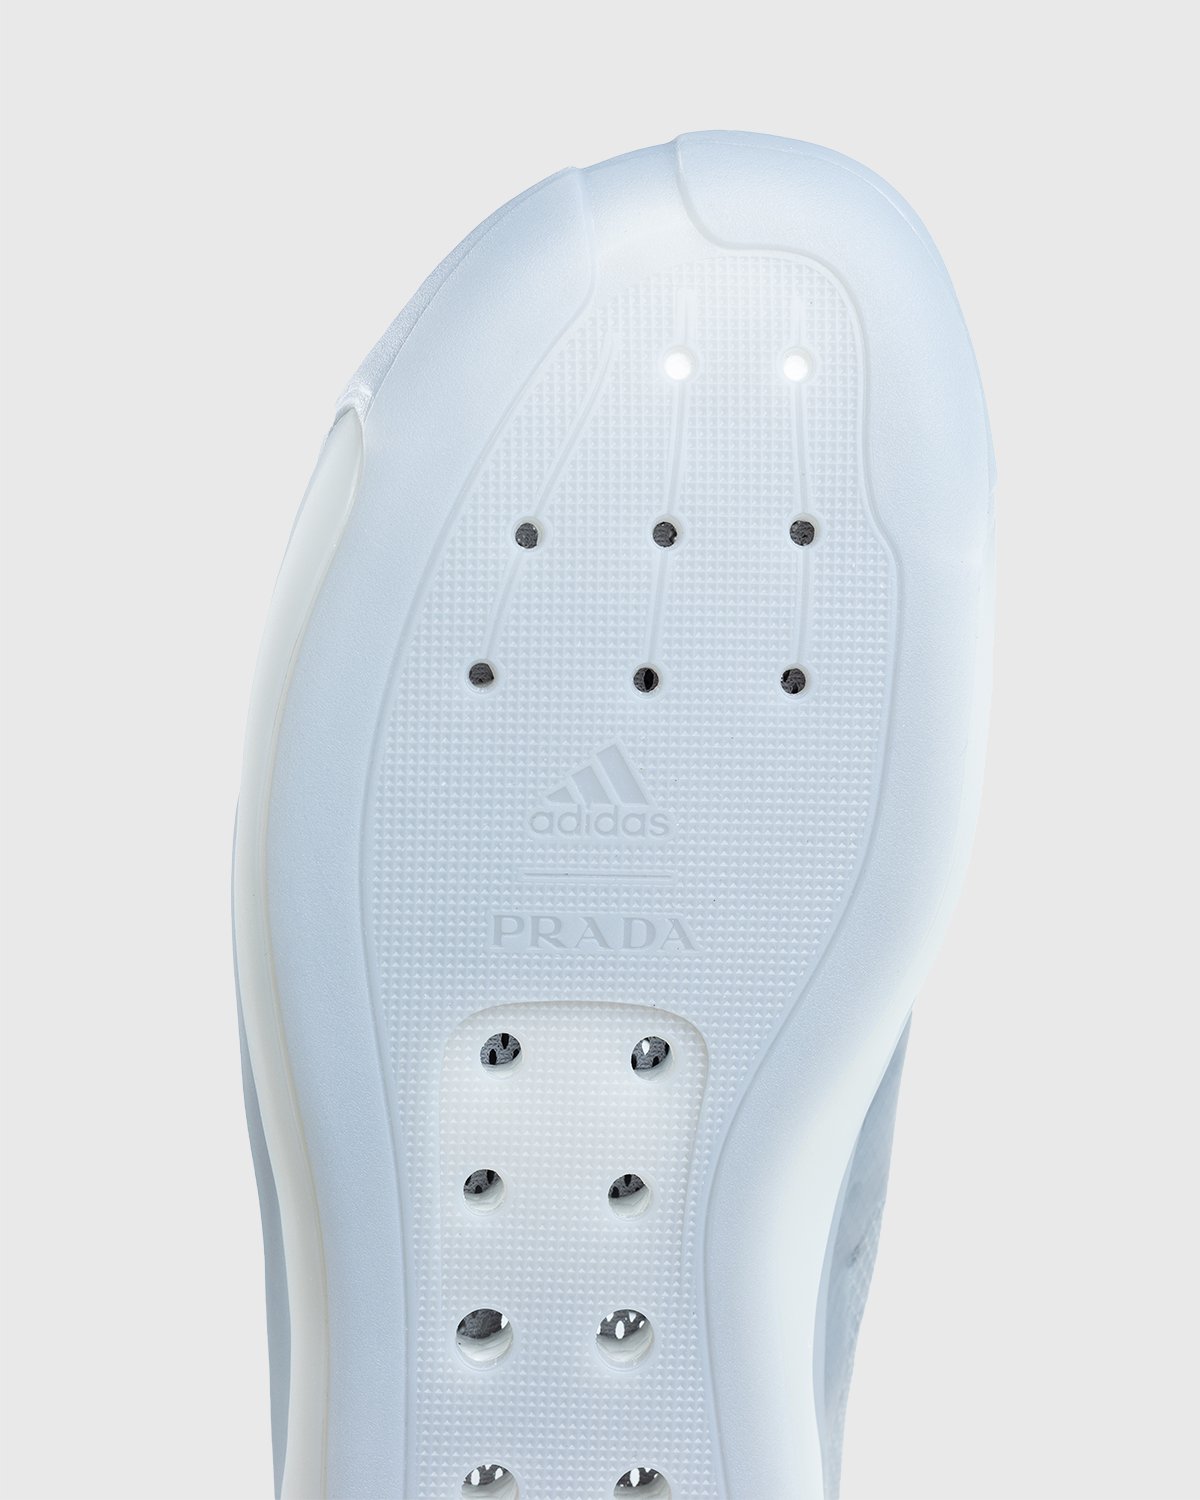 Adidas x Prada - A+P Luna Rossa 21 Performance - Footwear - Grey - Image 7